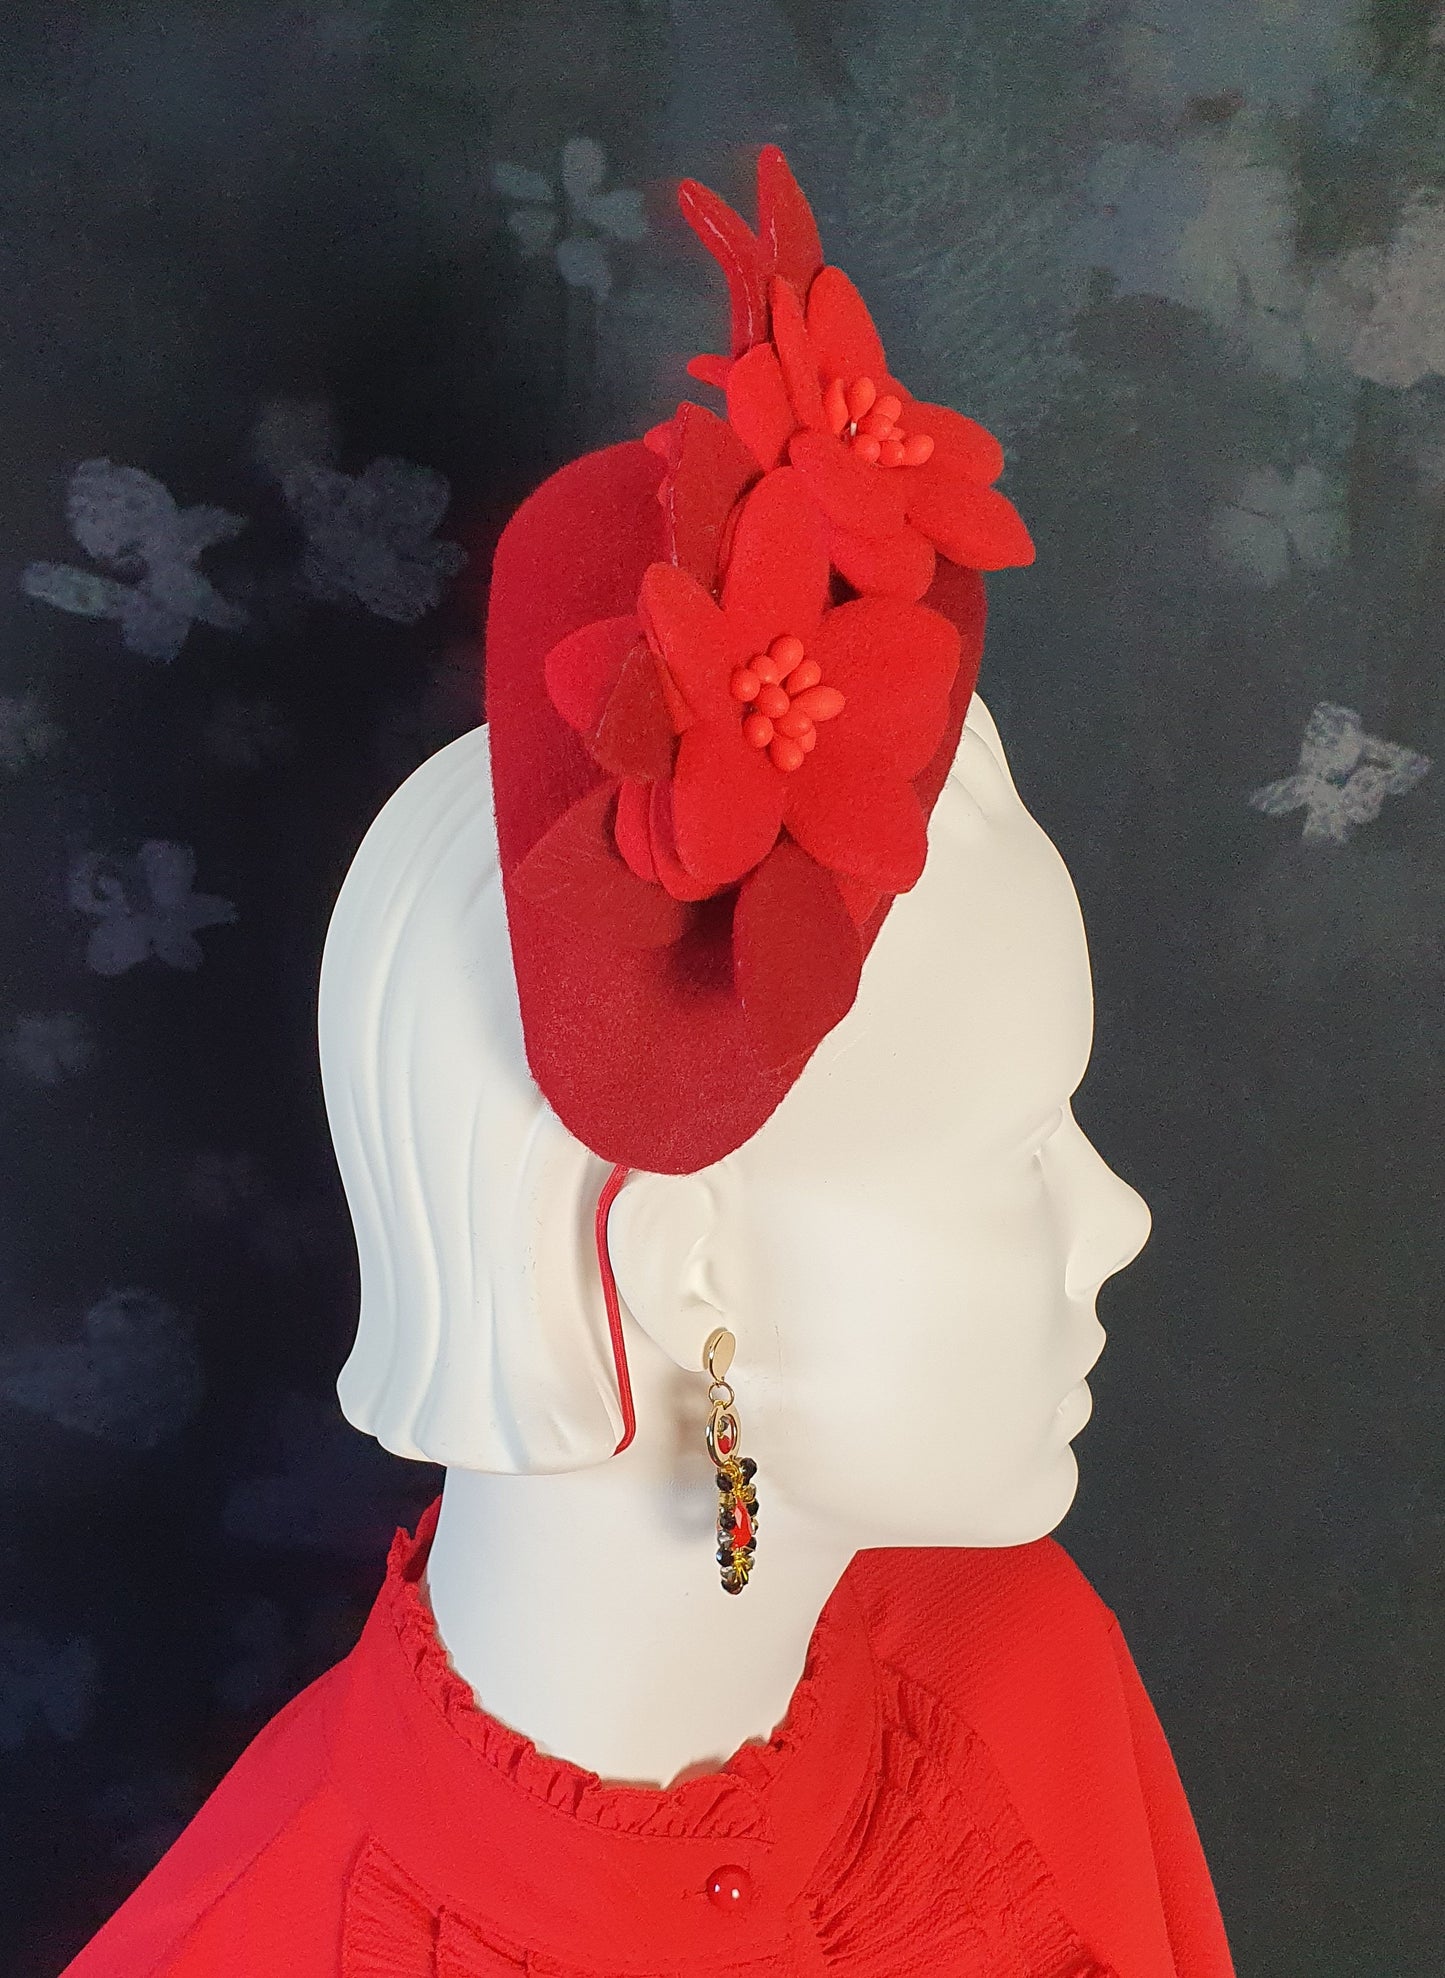 Rode vilten hoofdband met bloemen en bladeren - handgemaakt accessoire voor gasten, bruiden & speciale gelegenheden